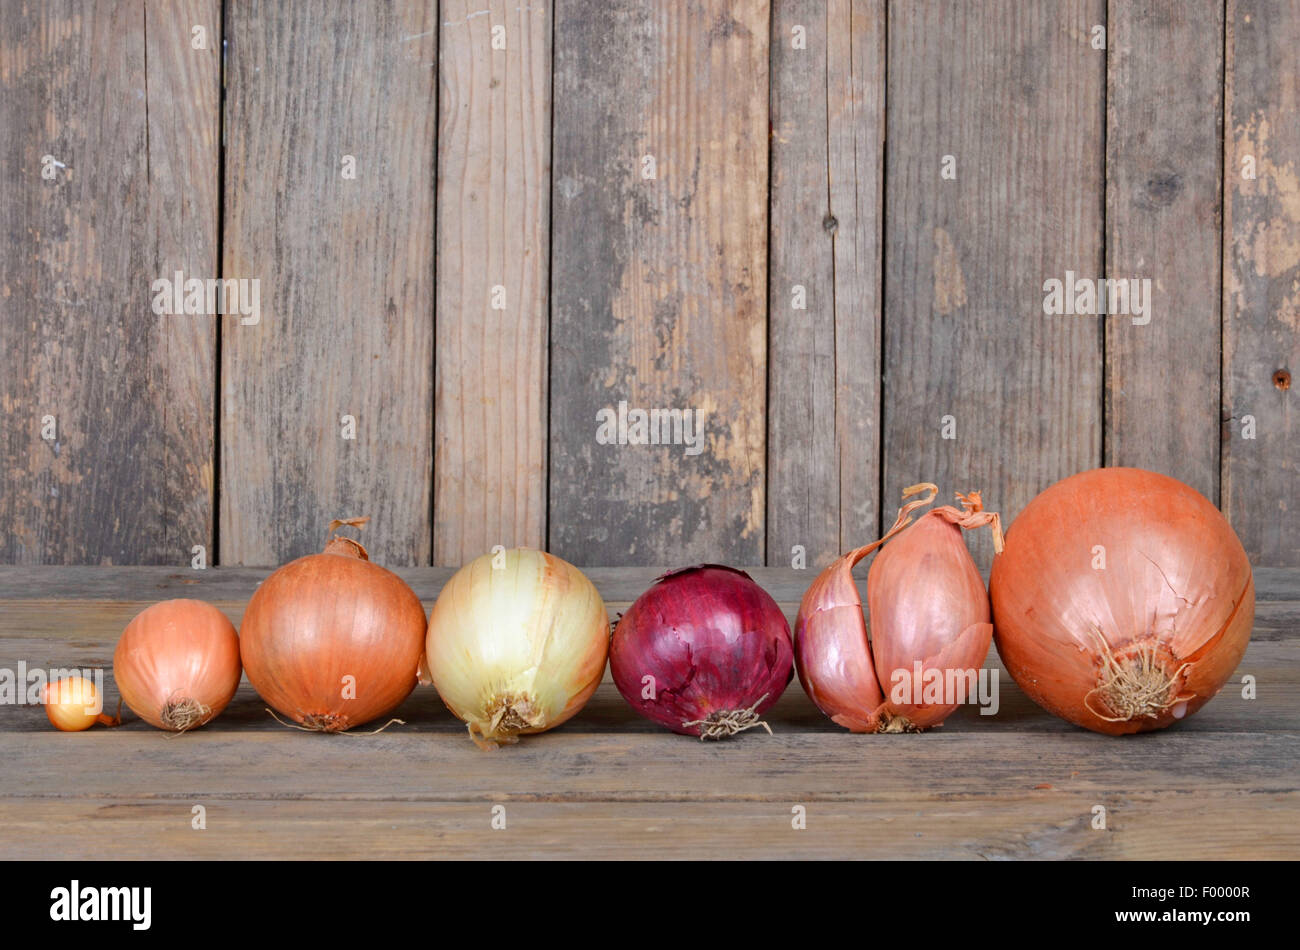 Garten-Zwiebel, Birne Zwiebel, gemeinsame Zwiebel (Allium Cepa), verschiedene Arten von Zwiebeln in einer Reihe Stockfoto